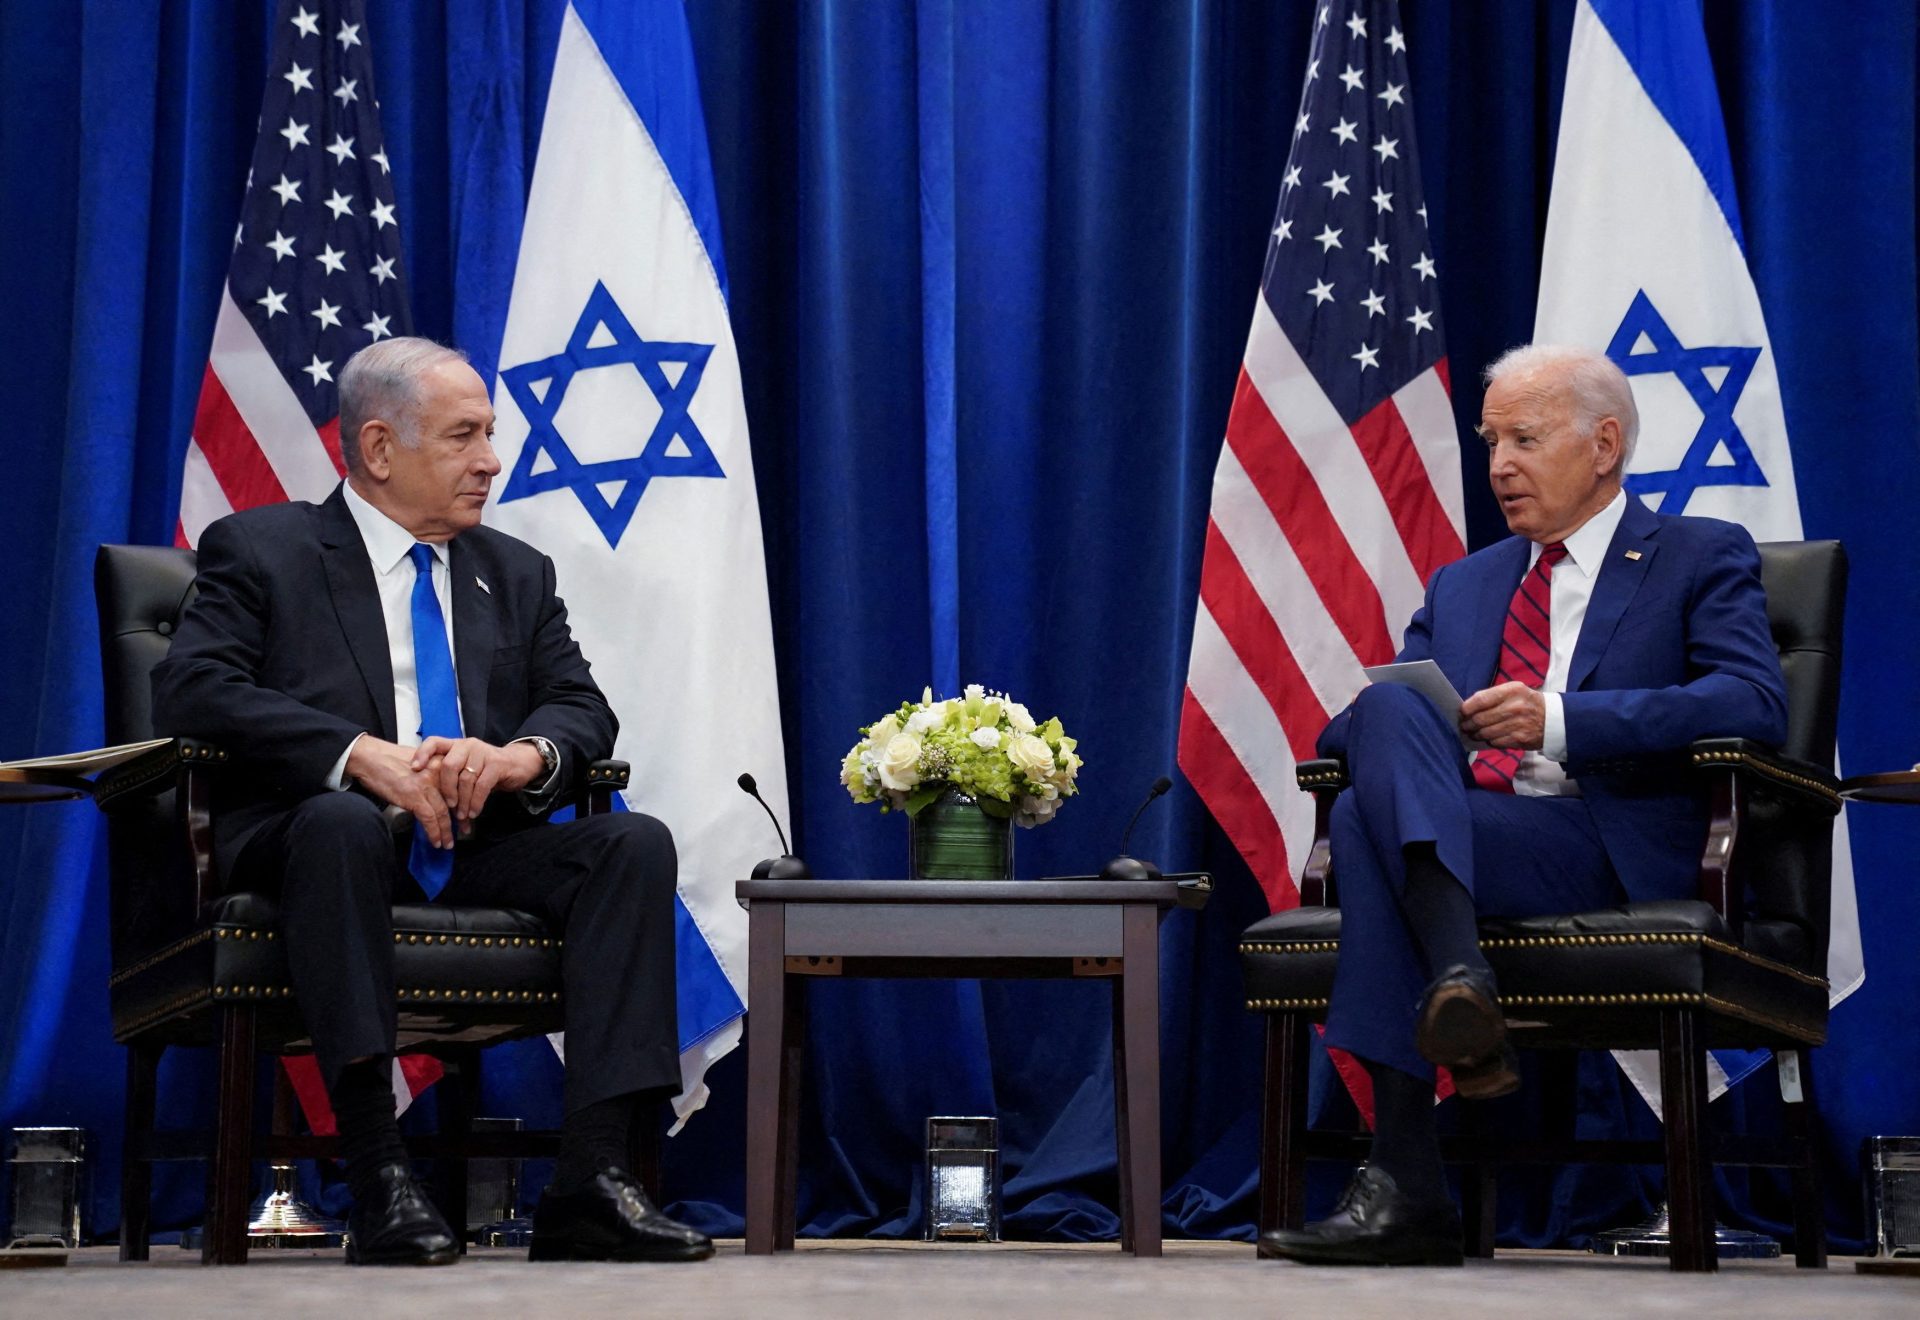 Hamas l'adore - Ministres israéliens critiquent Biden et appellent à la paix